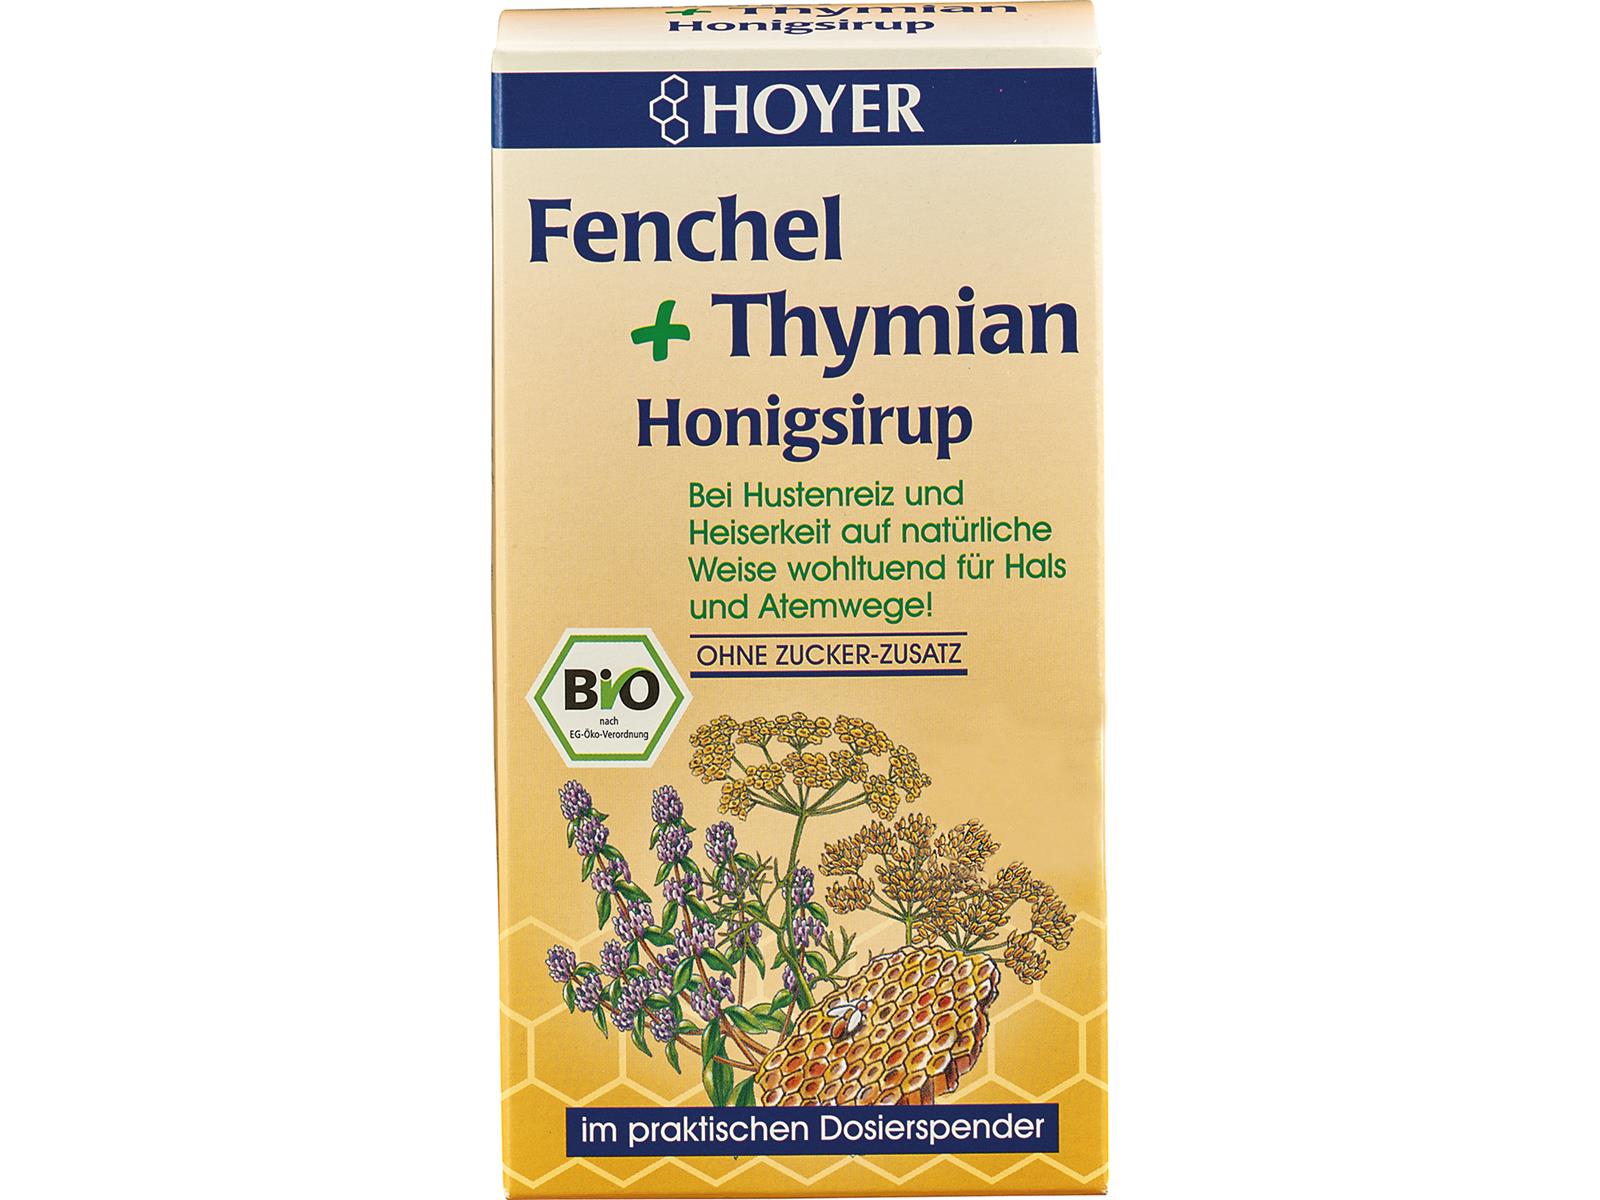 Hoyer Fenchel & Thymian Honigsirup 250g